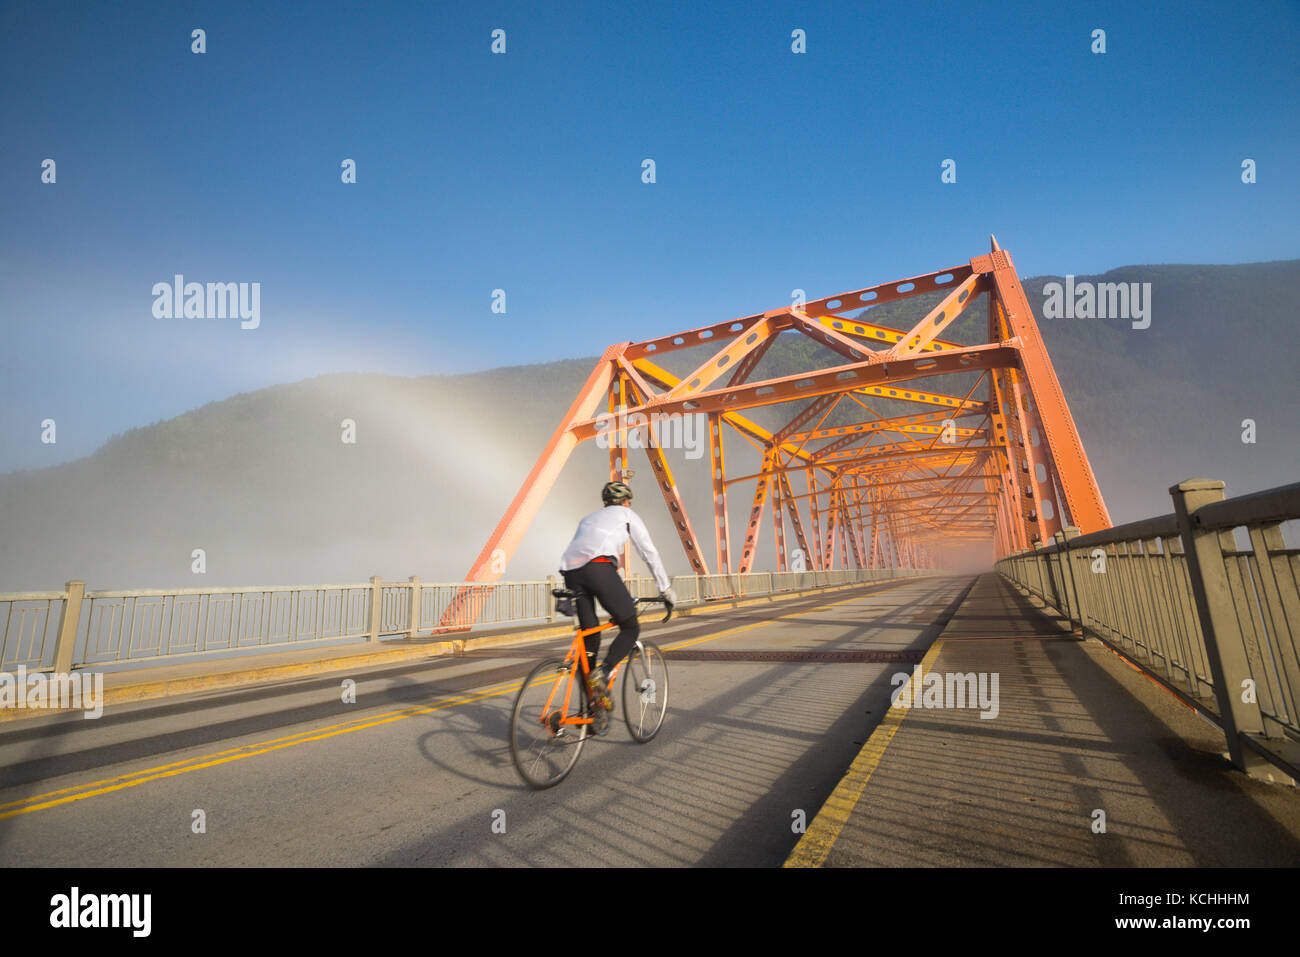 Un homme chevauche son vélo de route à faire la navette pendant qu'un brockenspecter brille derrière lui à Nelson, BC Banque D'Images